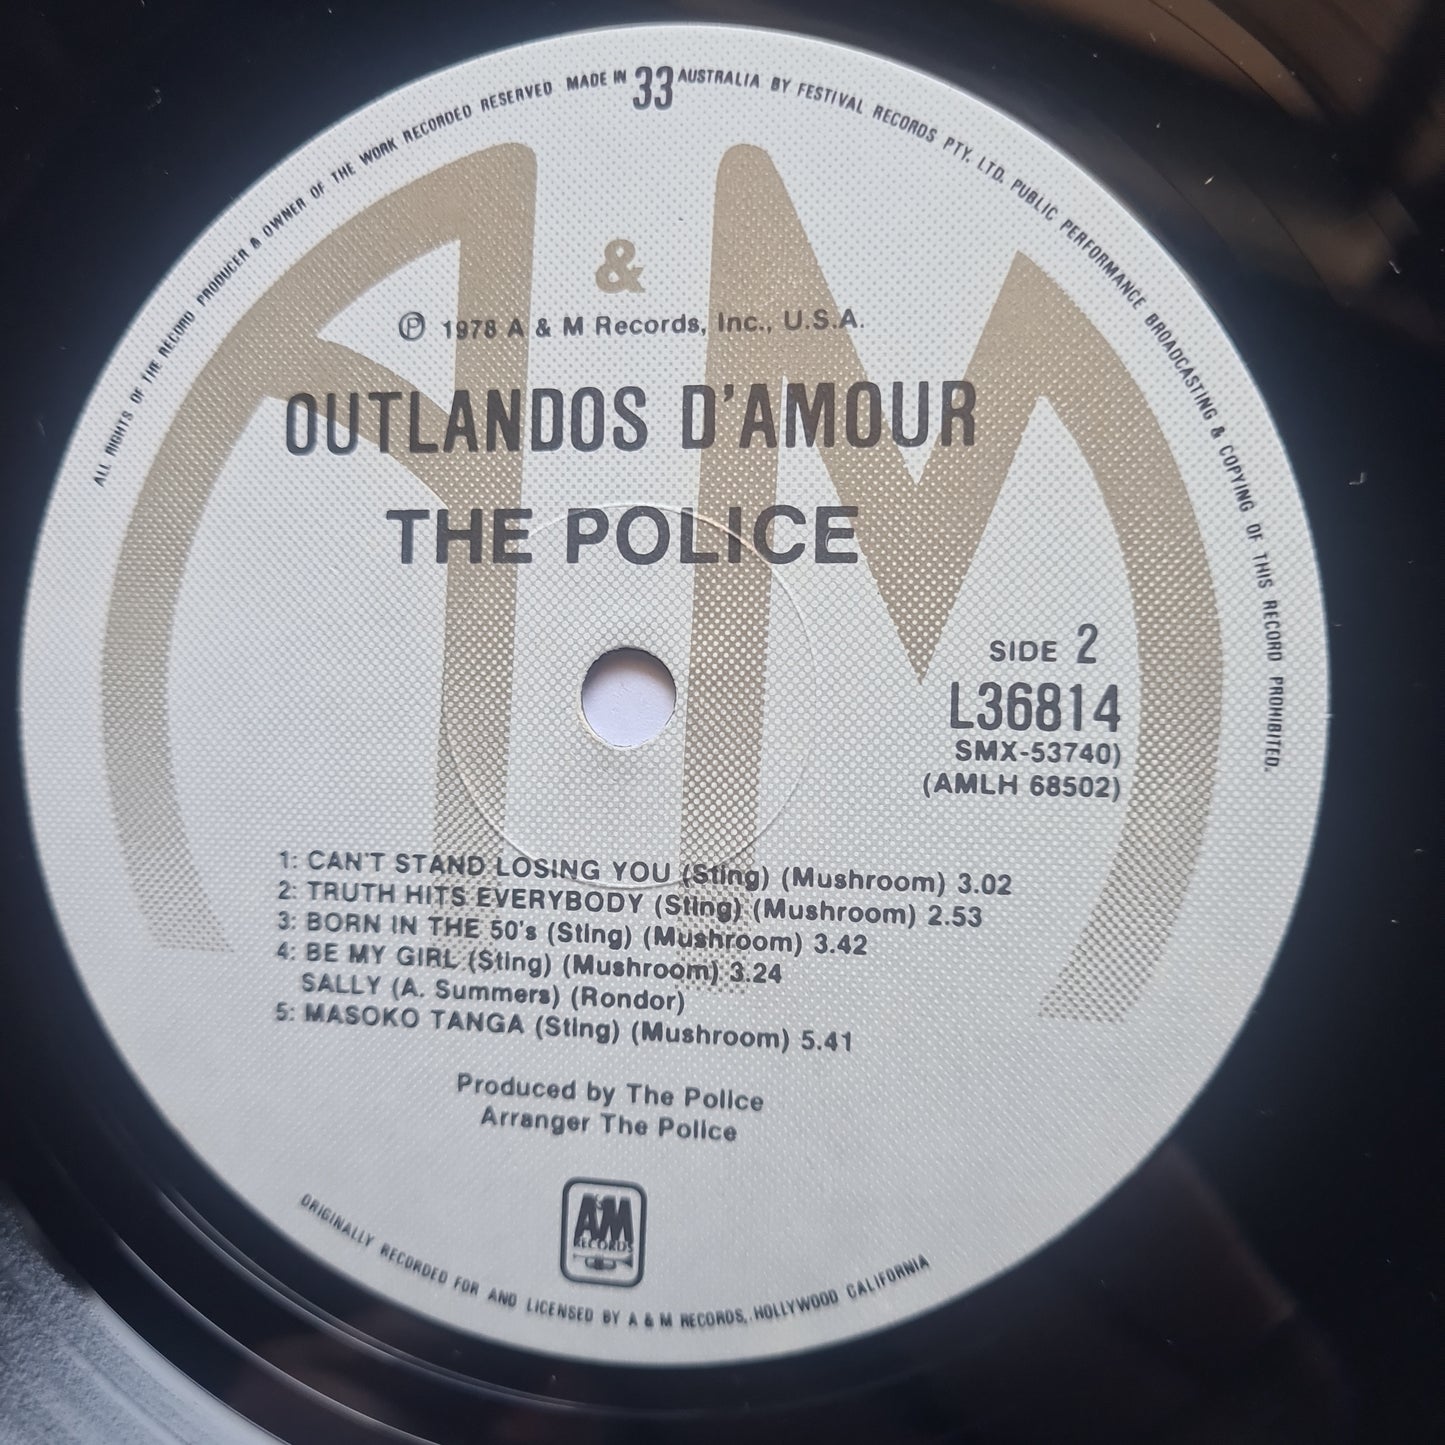 The Police – Outlandos D'Amour - 1978 - Vinyl Record